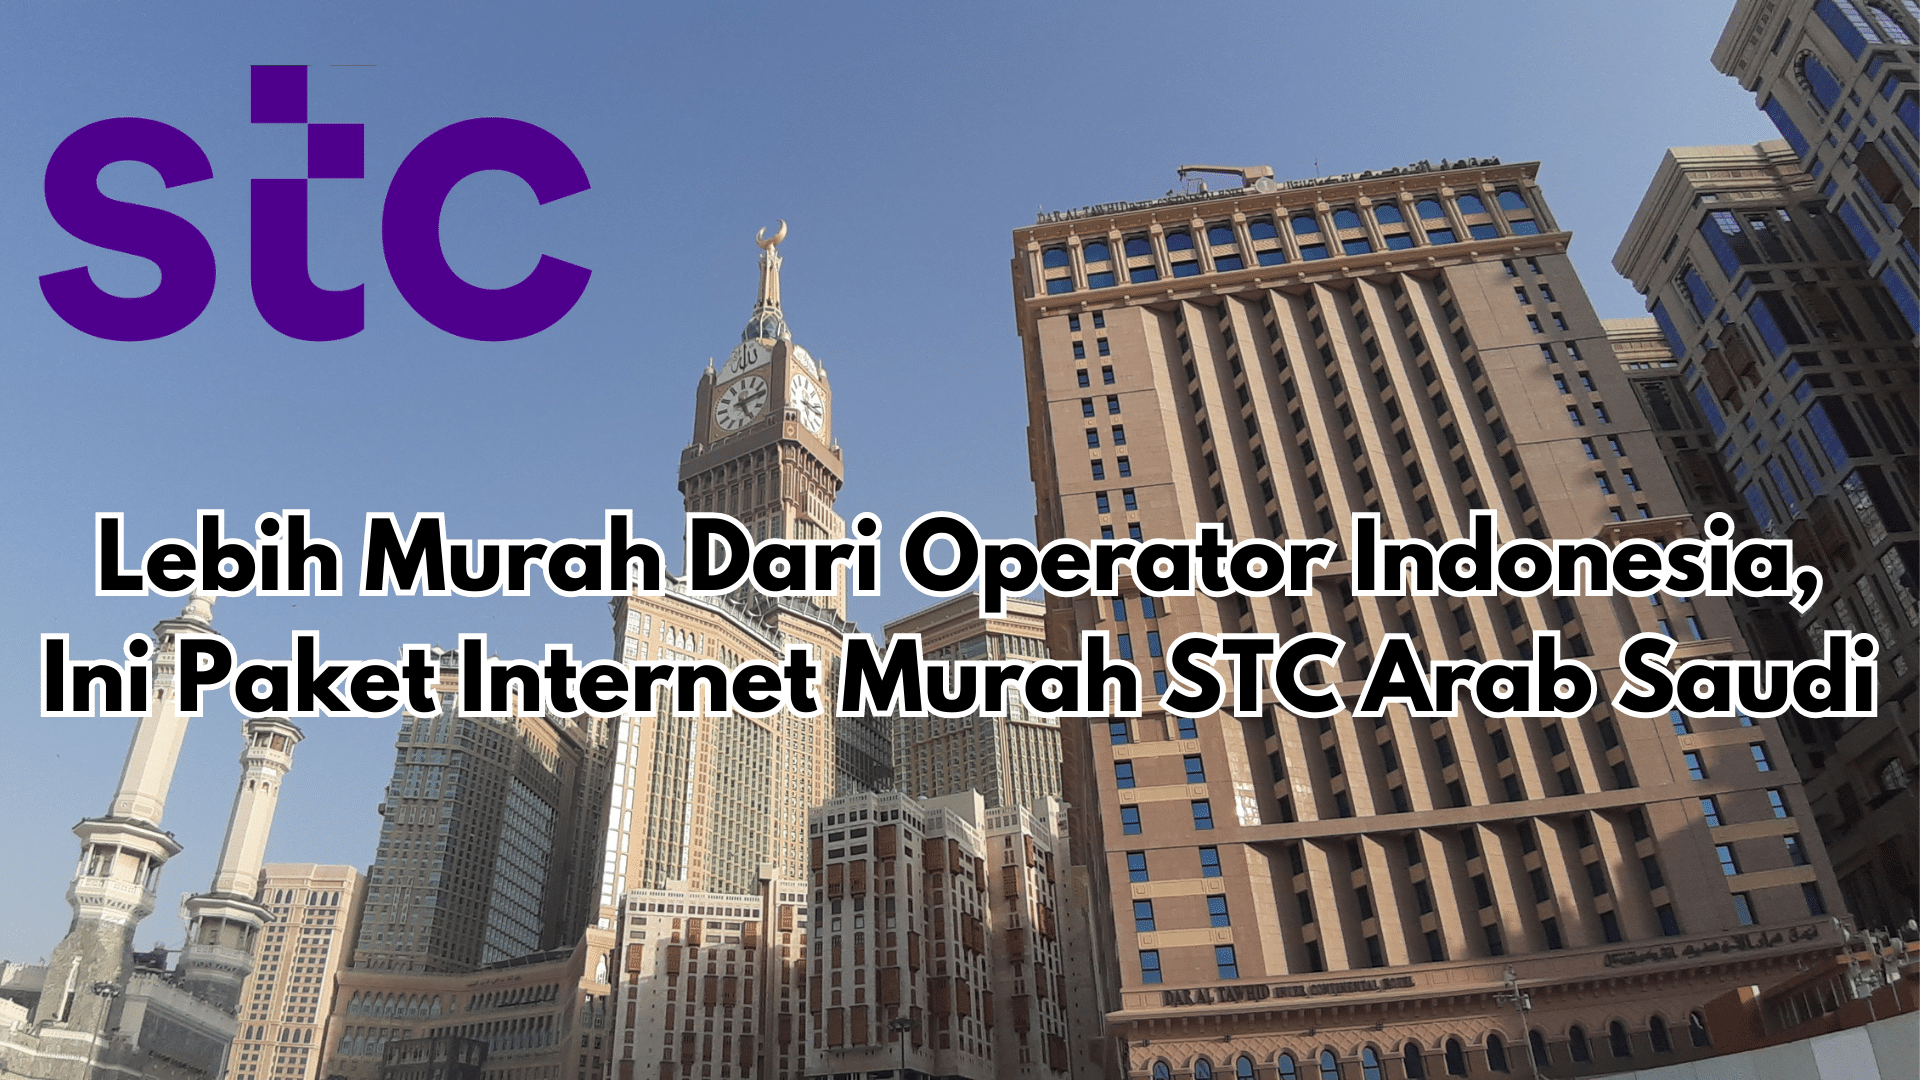 Beli Paket Internet Haji Murah STC Arab Saudi, Lebih Murah Dari Operator Indonesia